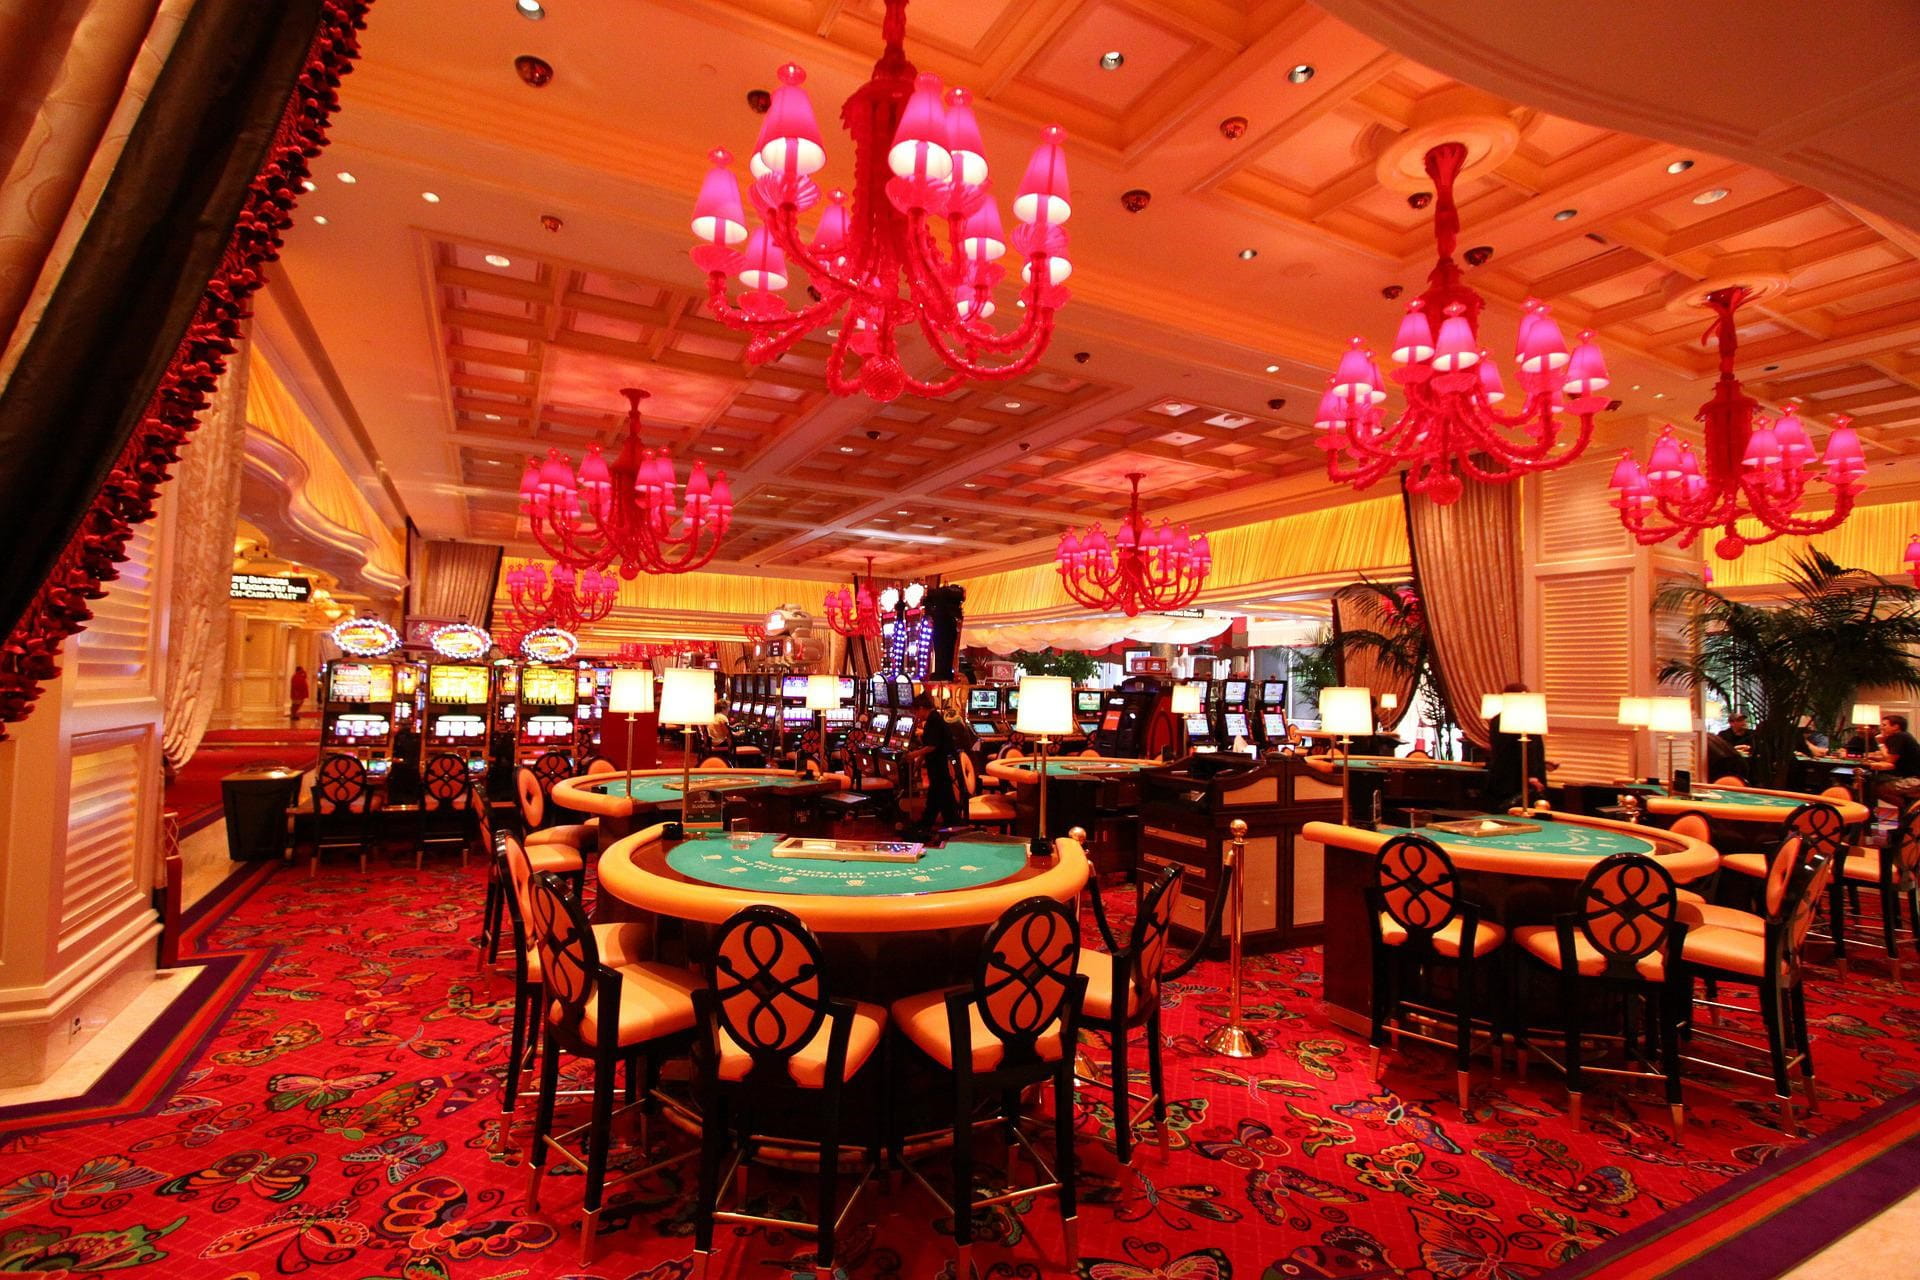 Das Wynn Resort in Las Vegas von innen: Luxuriöse Ausstattung in Form von Kronleuchten und einem riesigen Teppich.